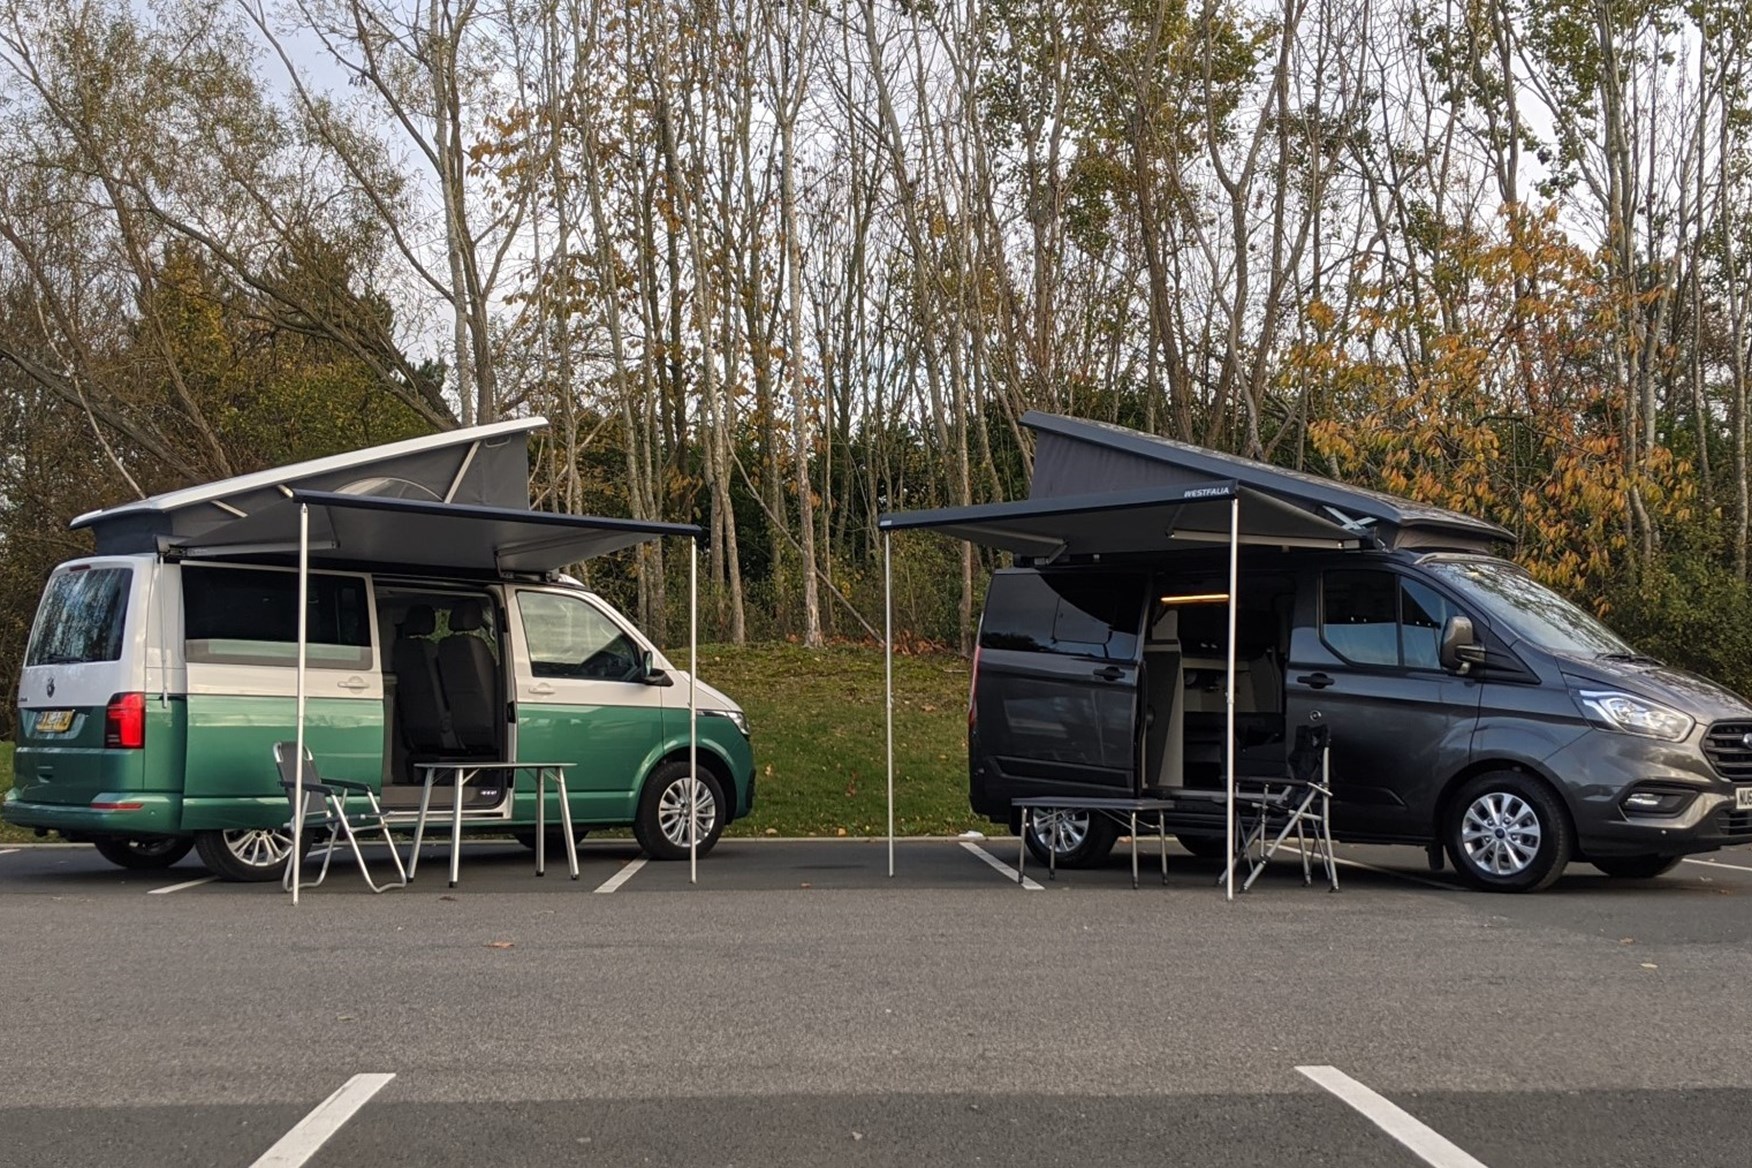 vauxhall camper vans for sale uk